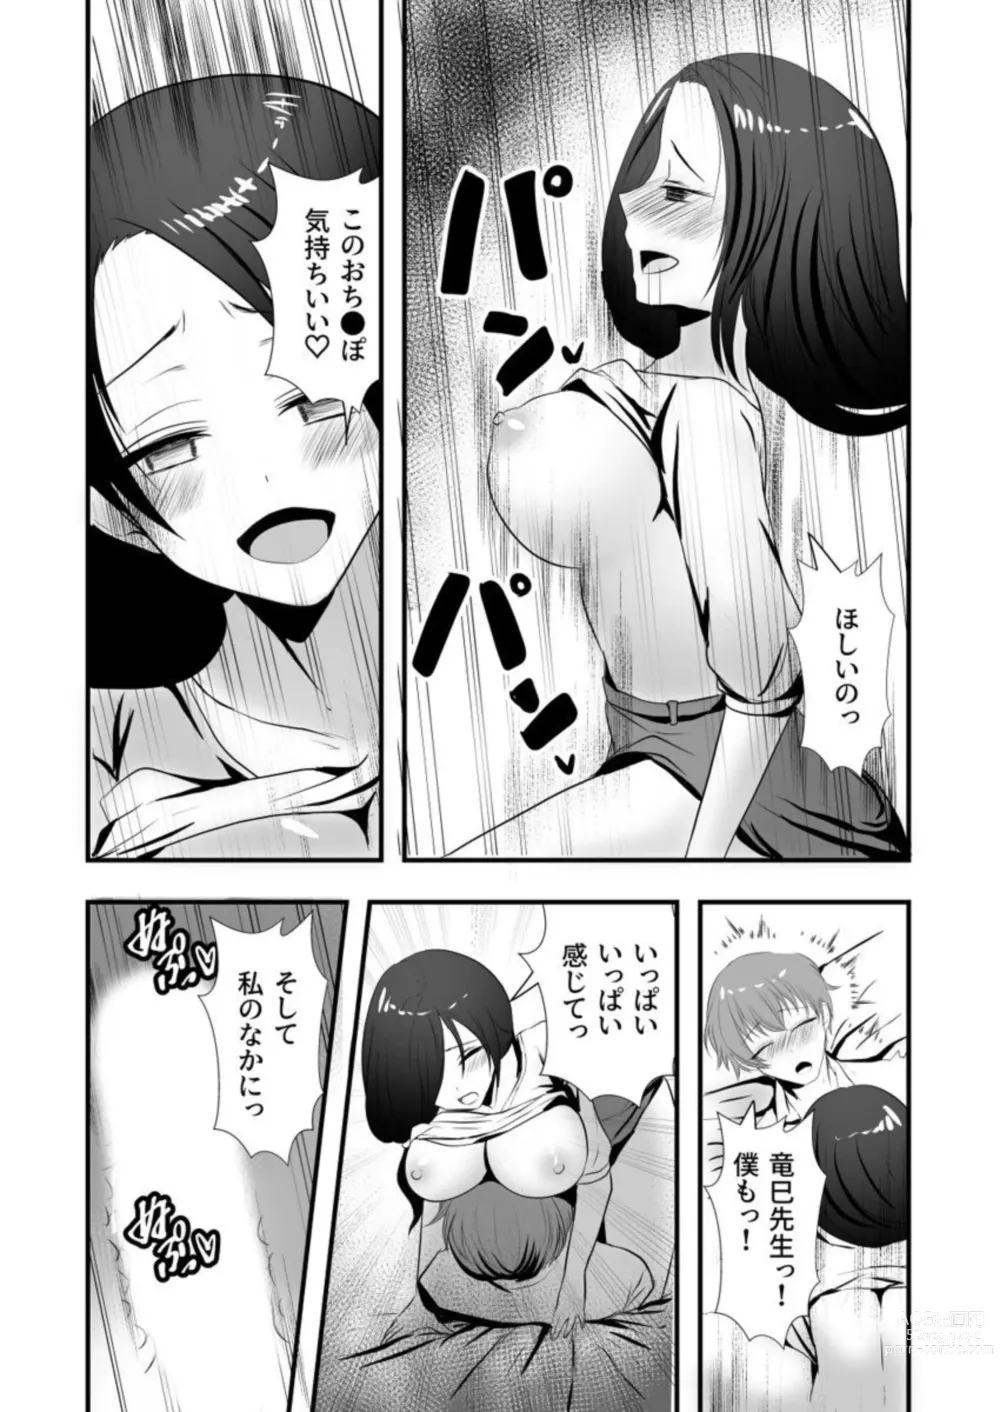 Page 23 of manga Ayakashi Shibori ~ Gokujō no sei wa 胎 No Naka ni 1